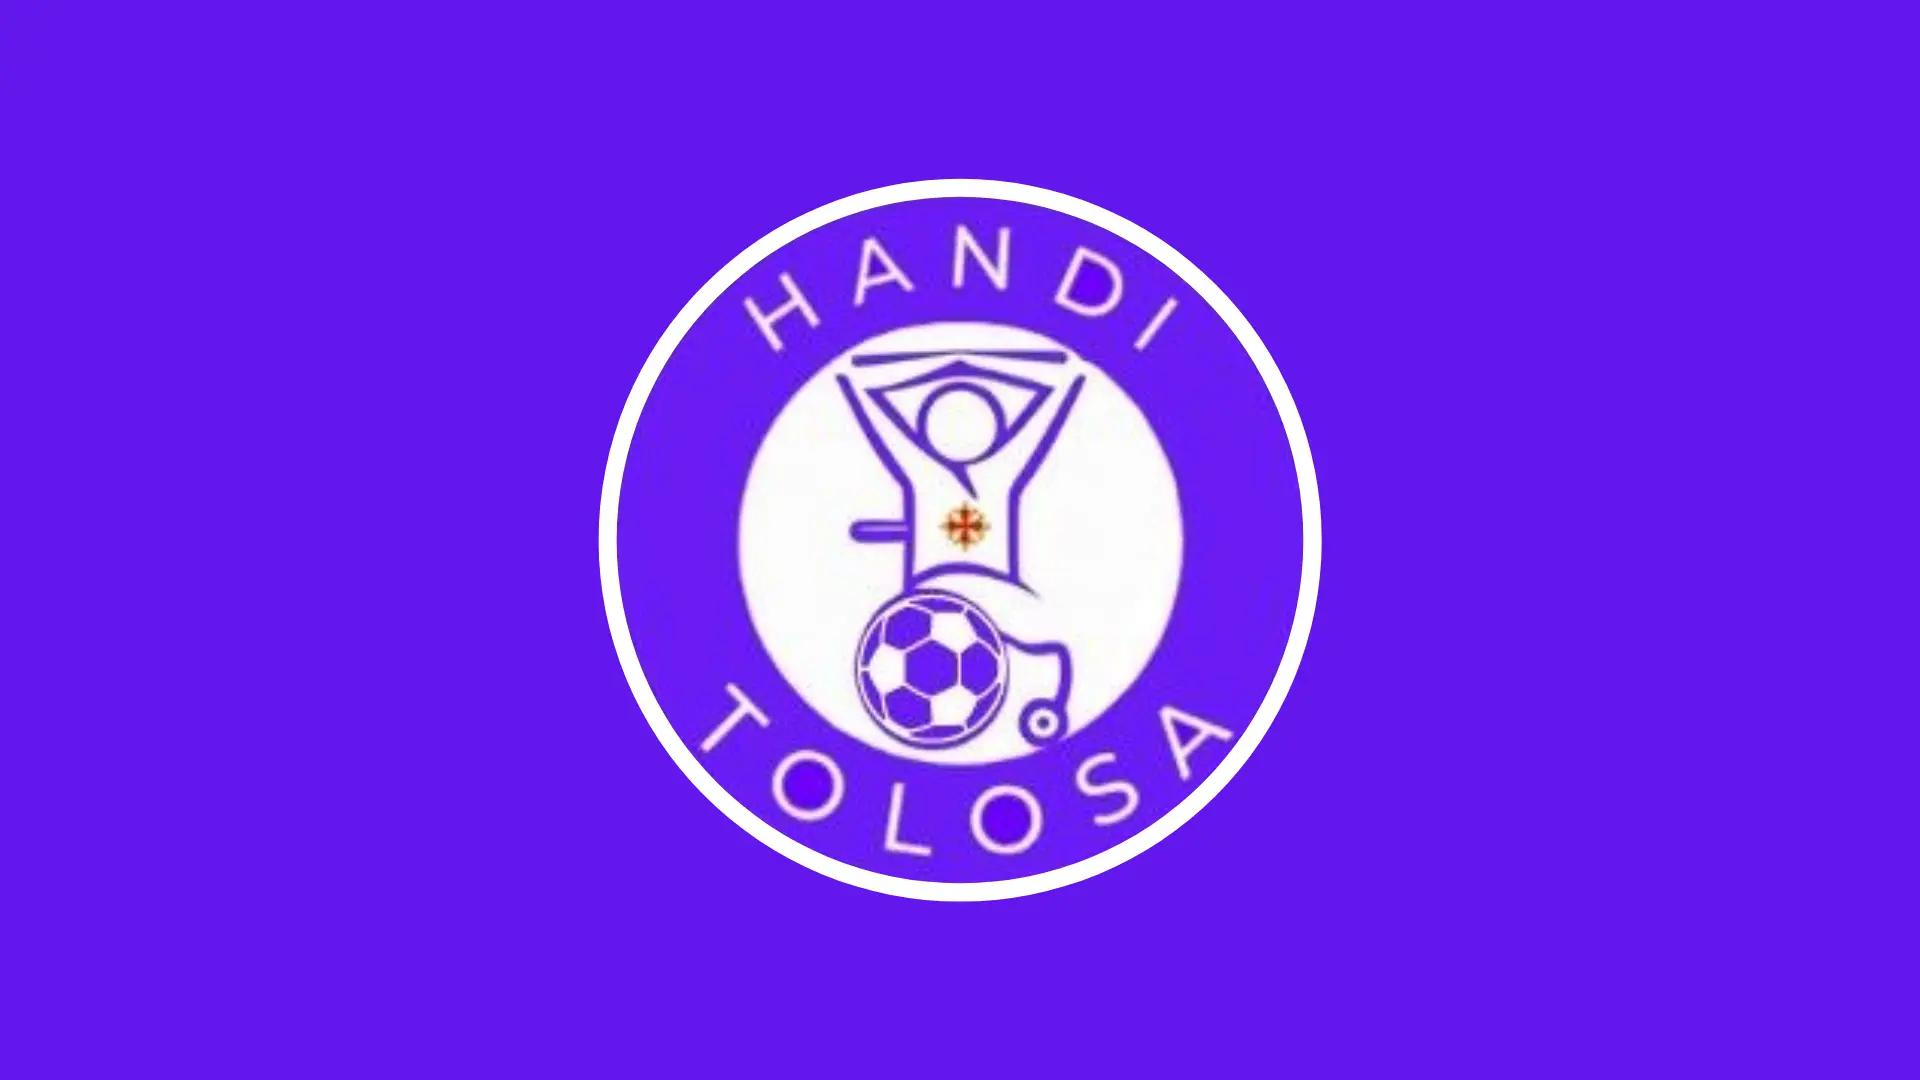 Nathan Mareschi, président de Handi Tolosa : "Nous voulons fédérer les fans du TFC en situation de handicap"